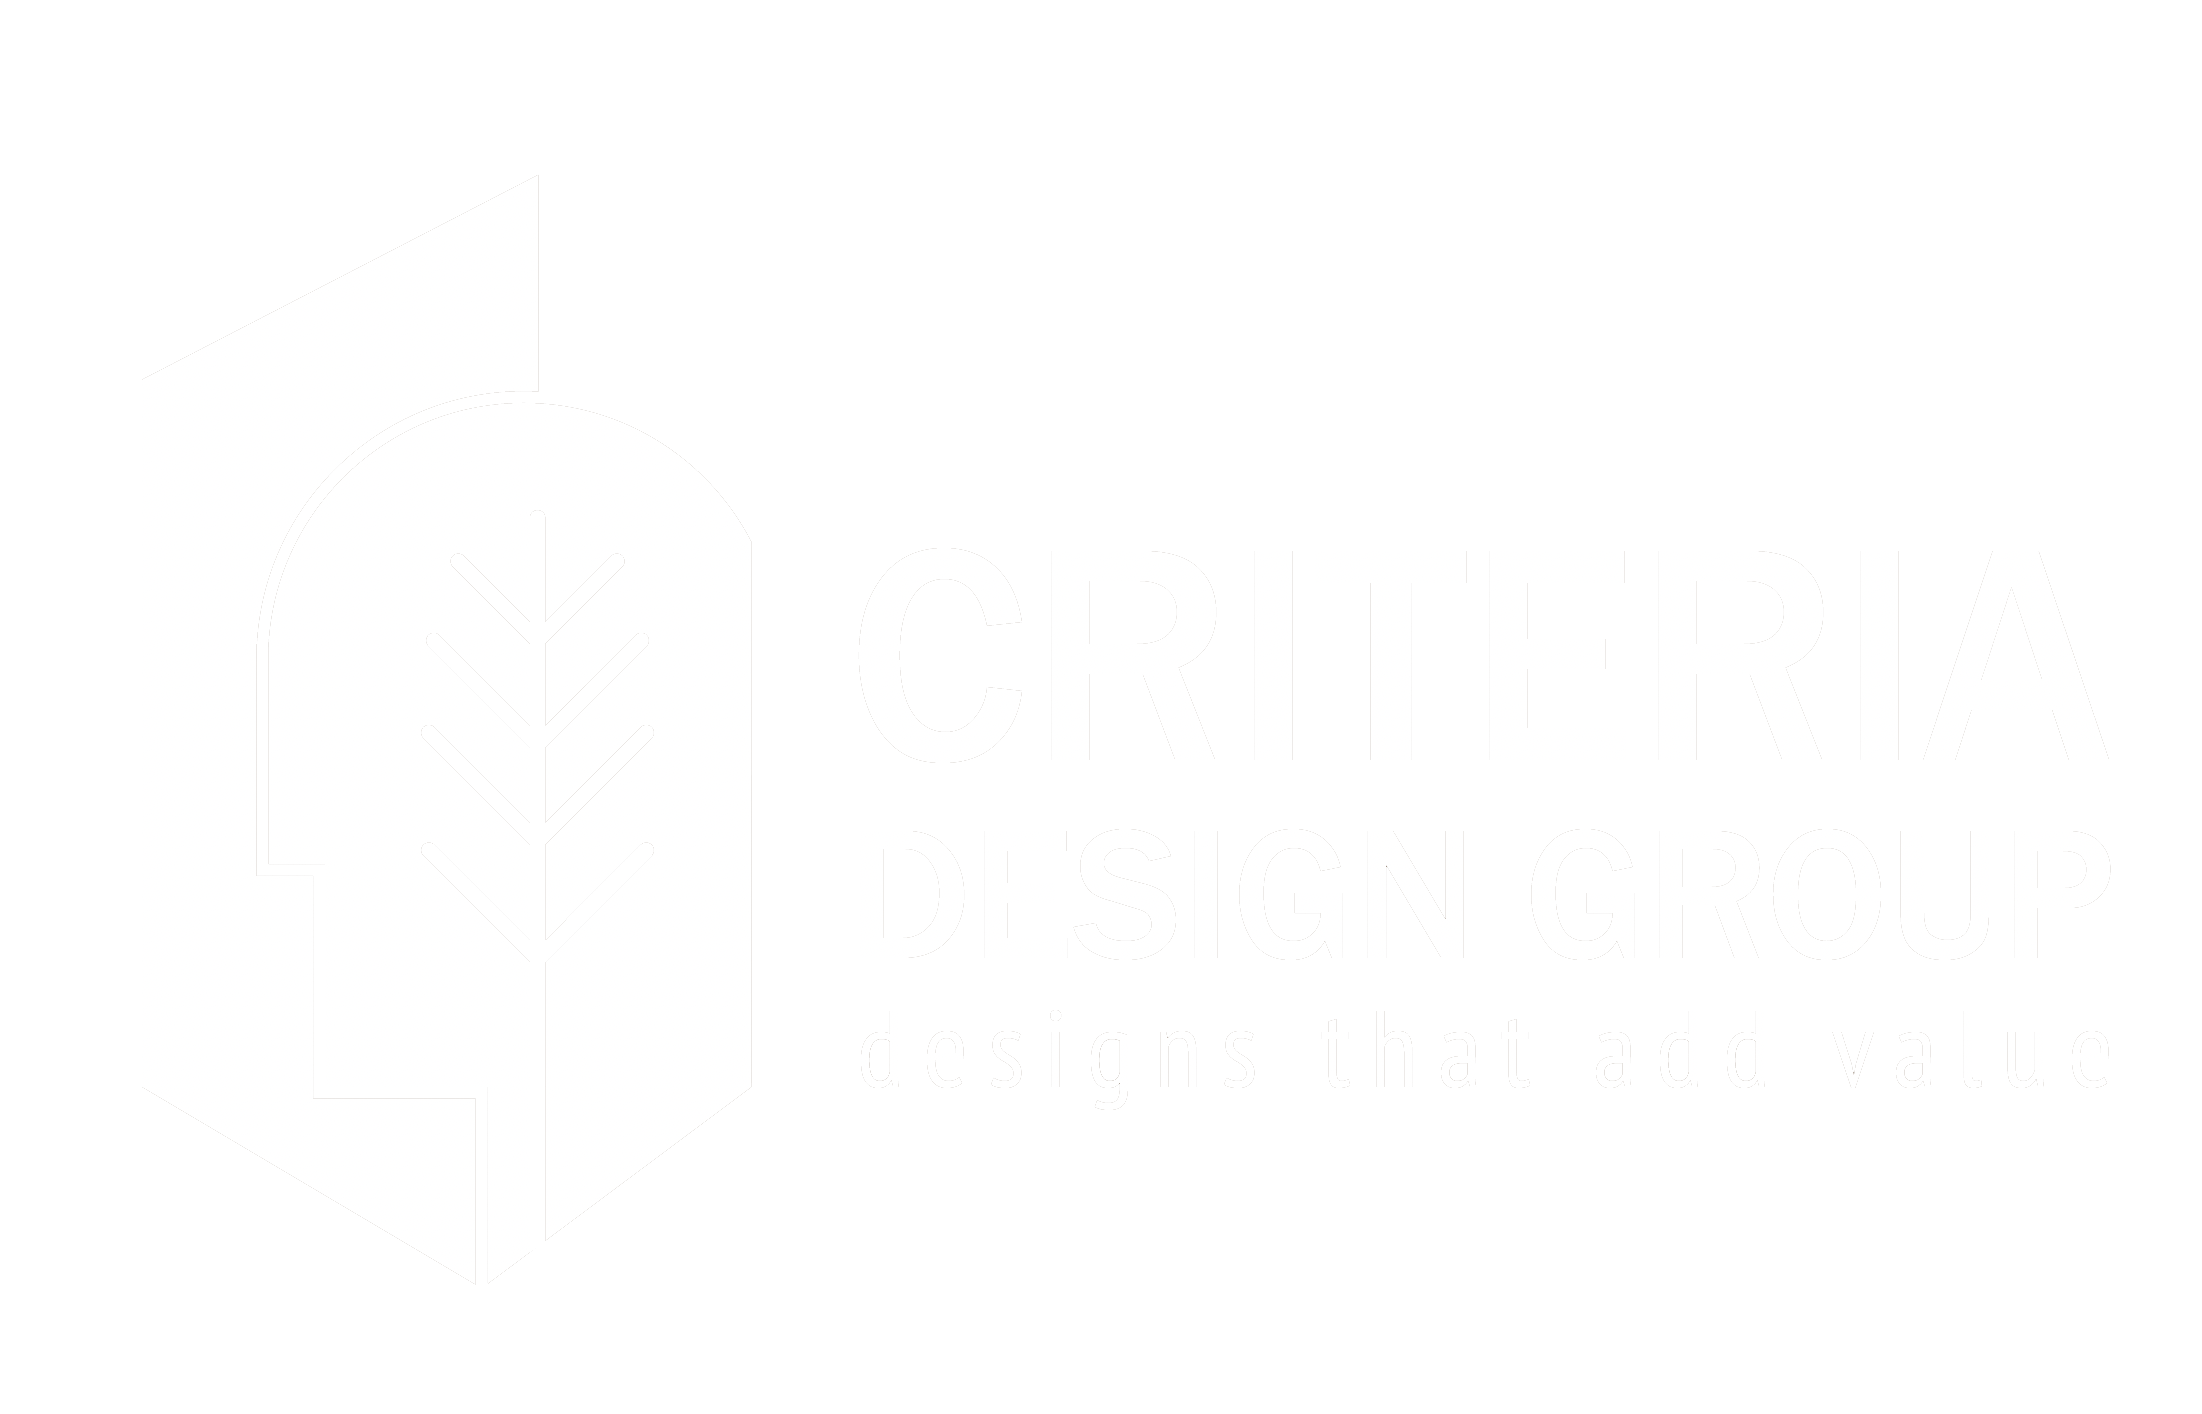 Criteria Design